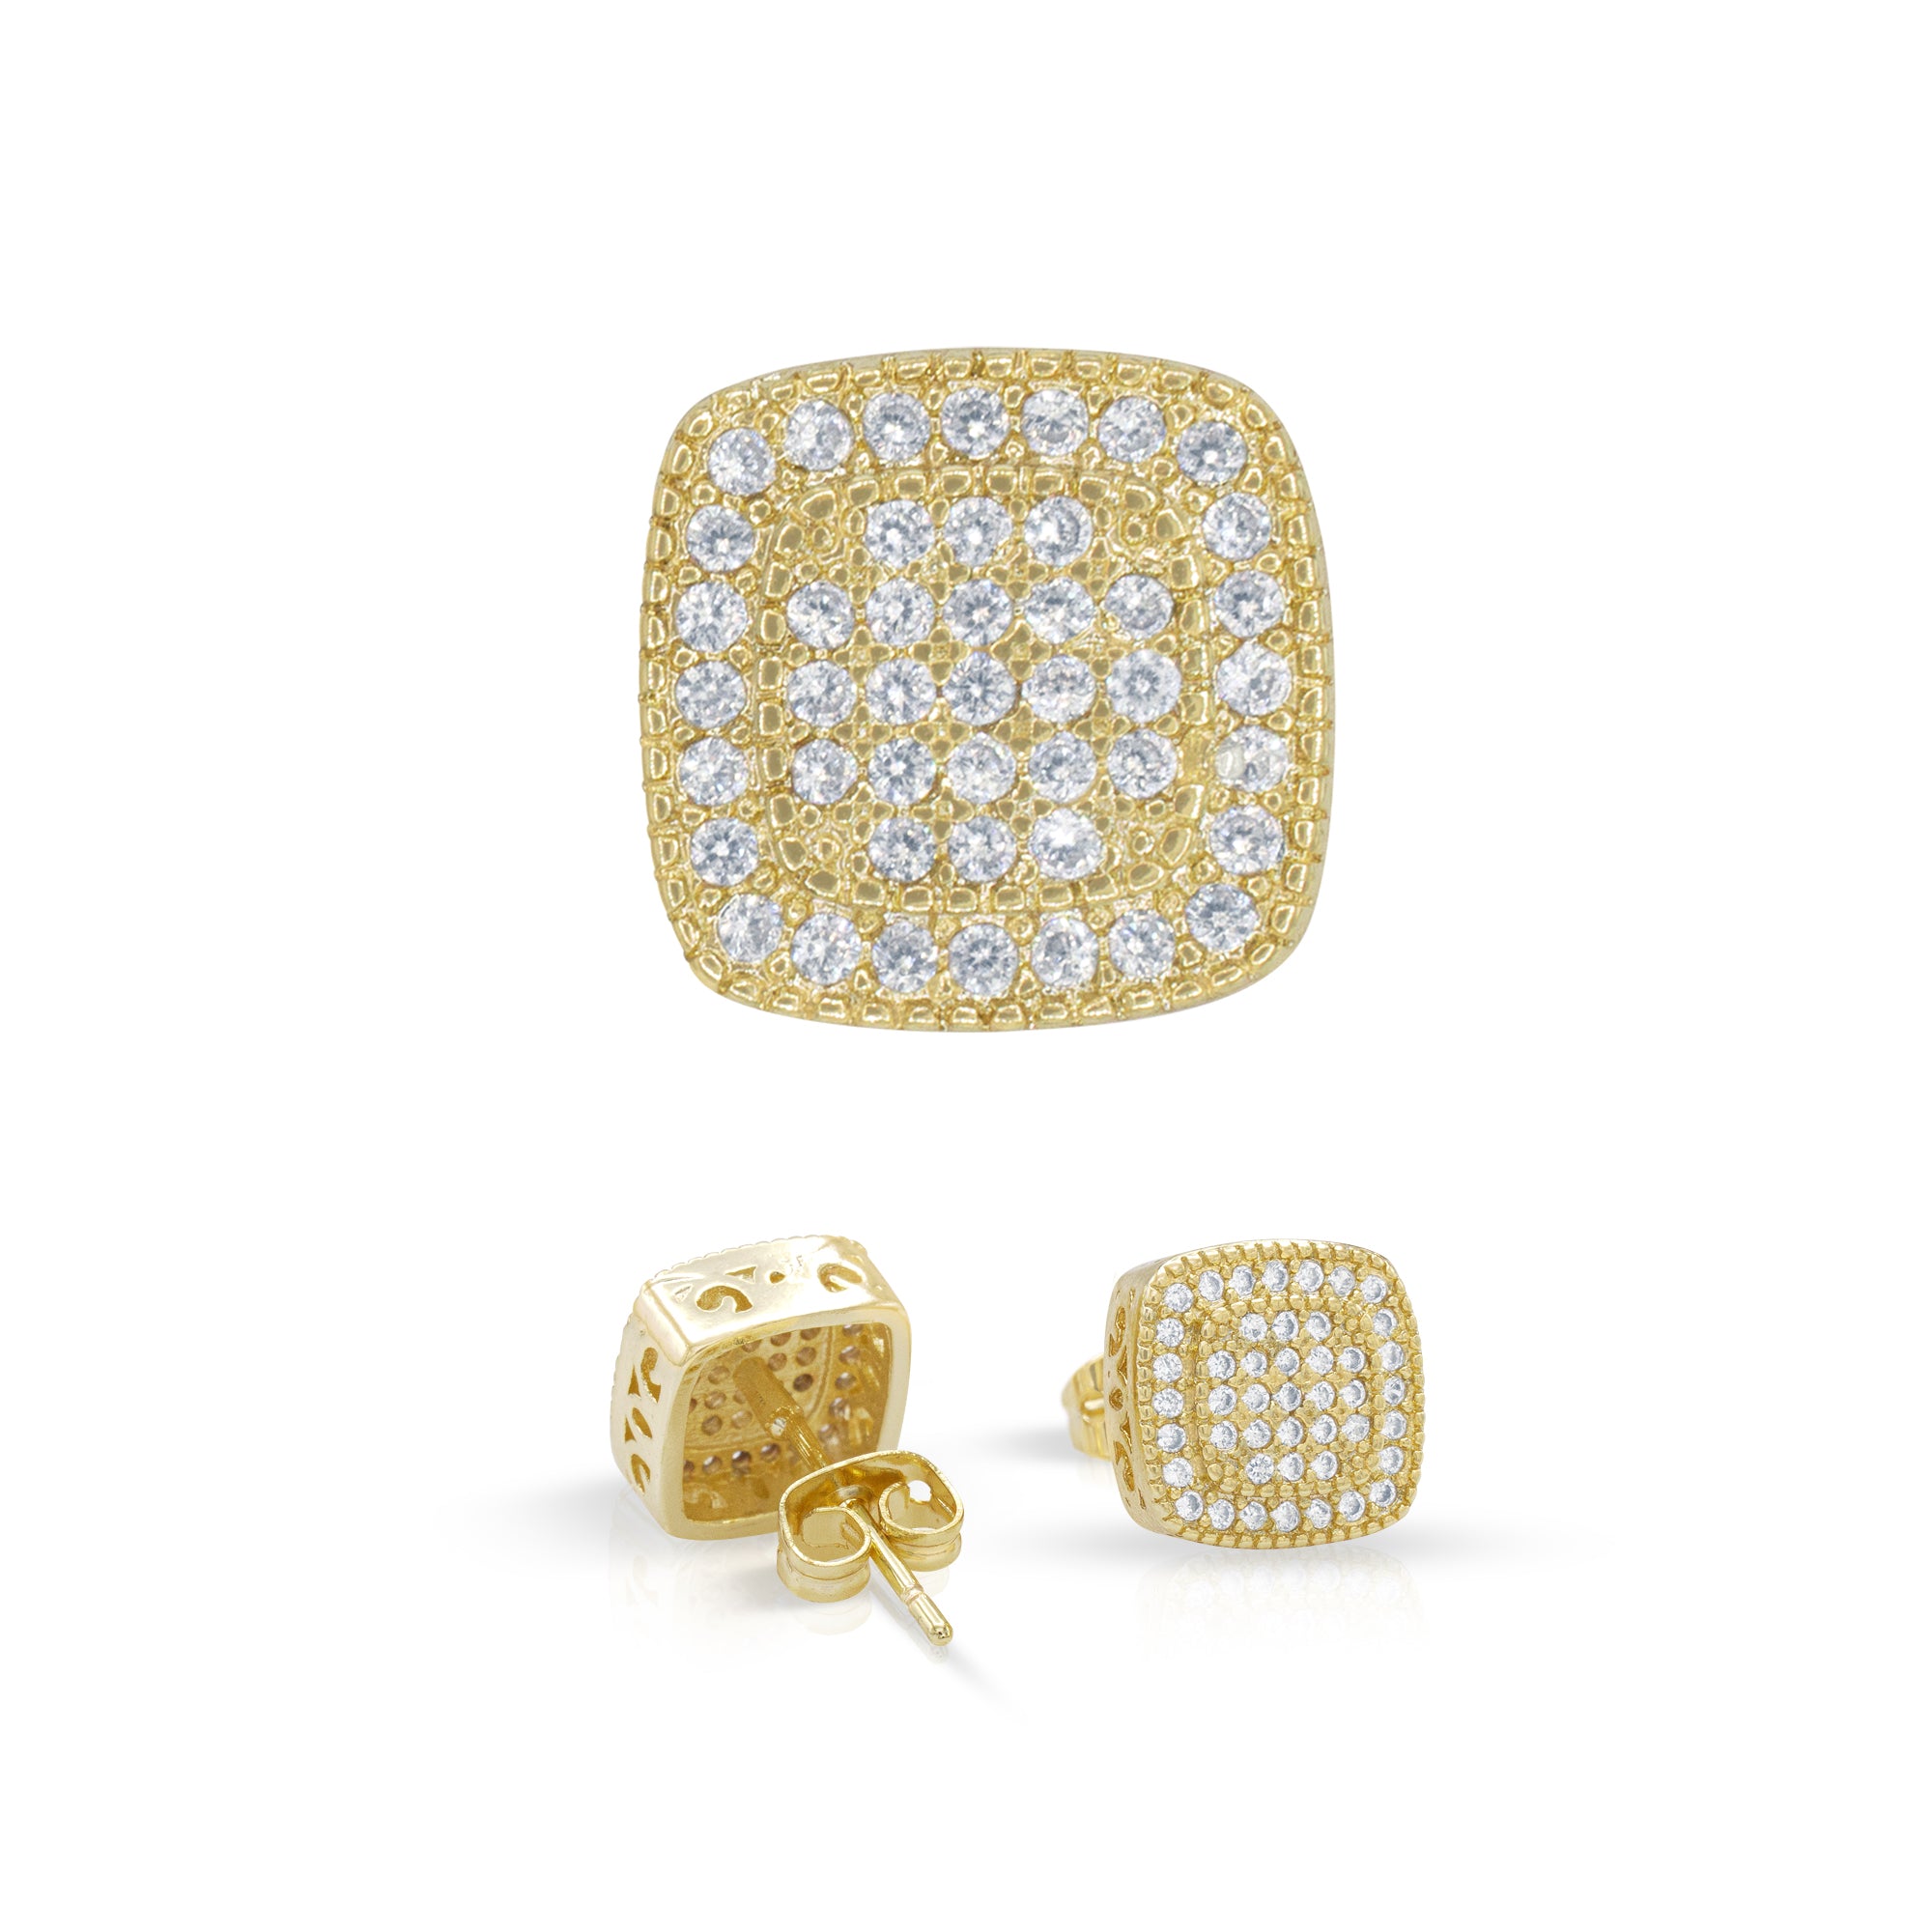 Double Square 6 Cubic Zirconia Earrings 14K Gold Filled Silver Hip Hop Studs Ear Piercing Jewelry Women Men